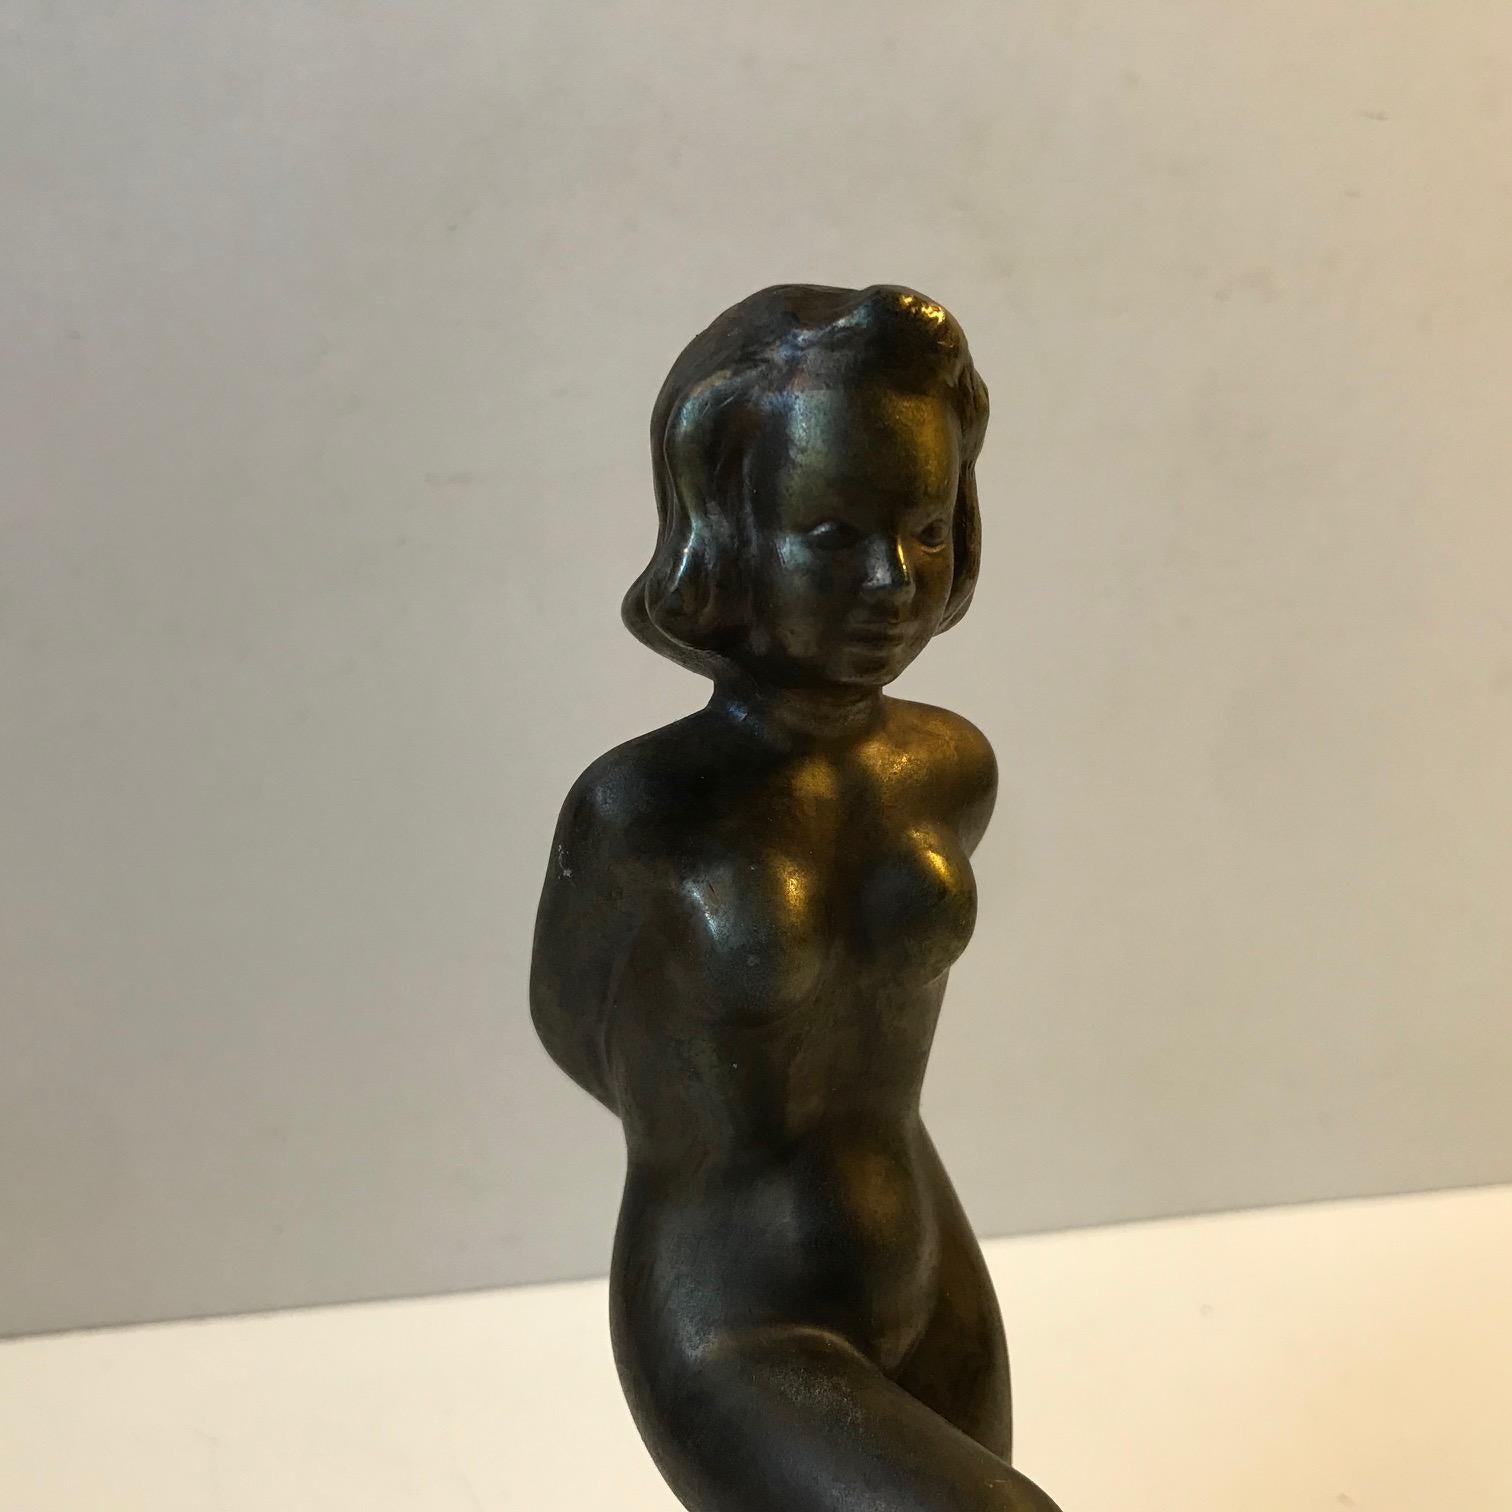 Petite sculpture en bronze représentant une femme nue. Réalisé par l'artiste et sculpteur danois Ove Fritz Rasmussen, (1911-1973). Il date de la fin des années 1940 ou du début des années 1950. Elle est signée à la main sur la 